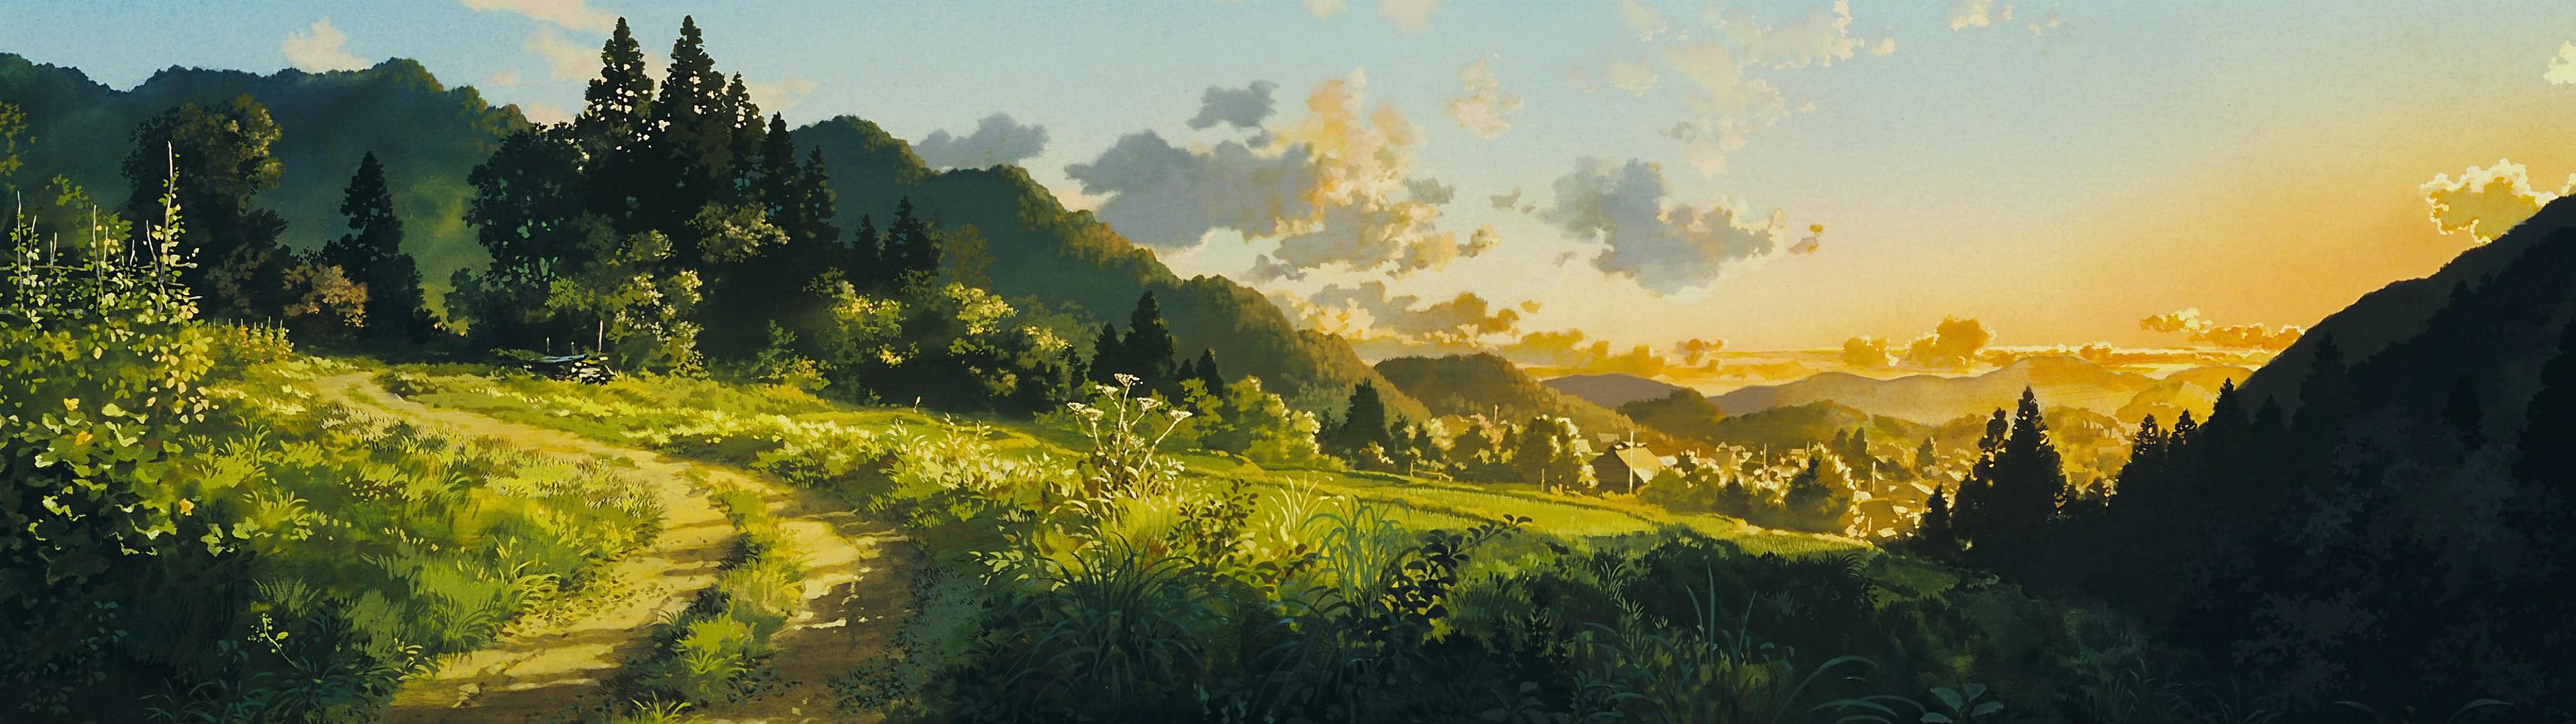 Cùng khám phá thế giới tuyệt vời của Ghibli với những hình ảnh tinh tế và đầy màu sắc. Bộ sưu tập Ghibli sẽ đem đến cho bạn những cảm xúc khó quên và giúp bạn khám phá thế giới của các nhân vật hoạt hình đáng yêu trong phim.